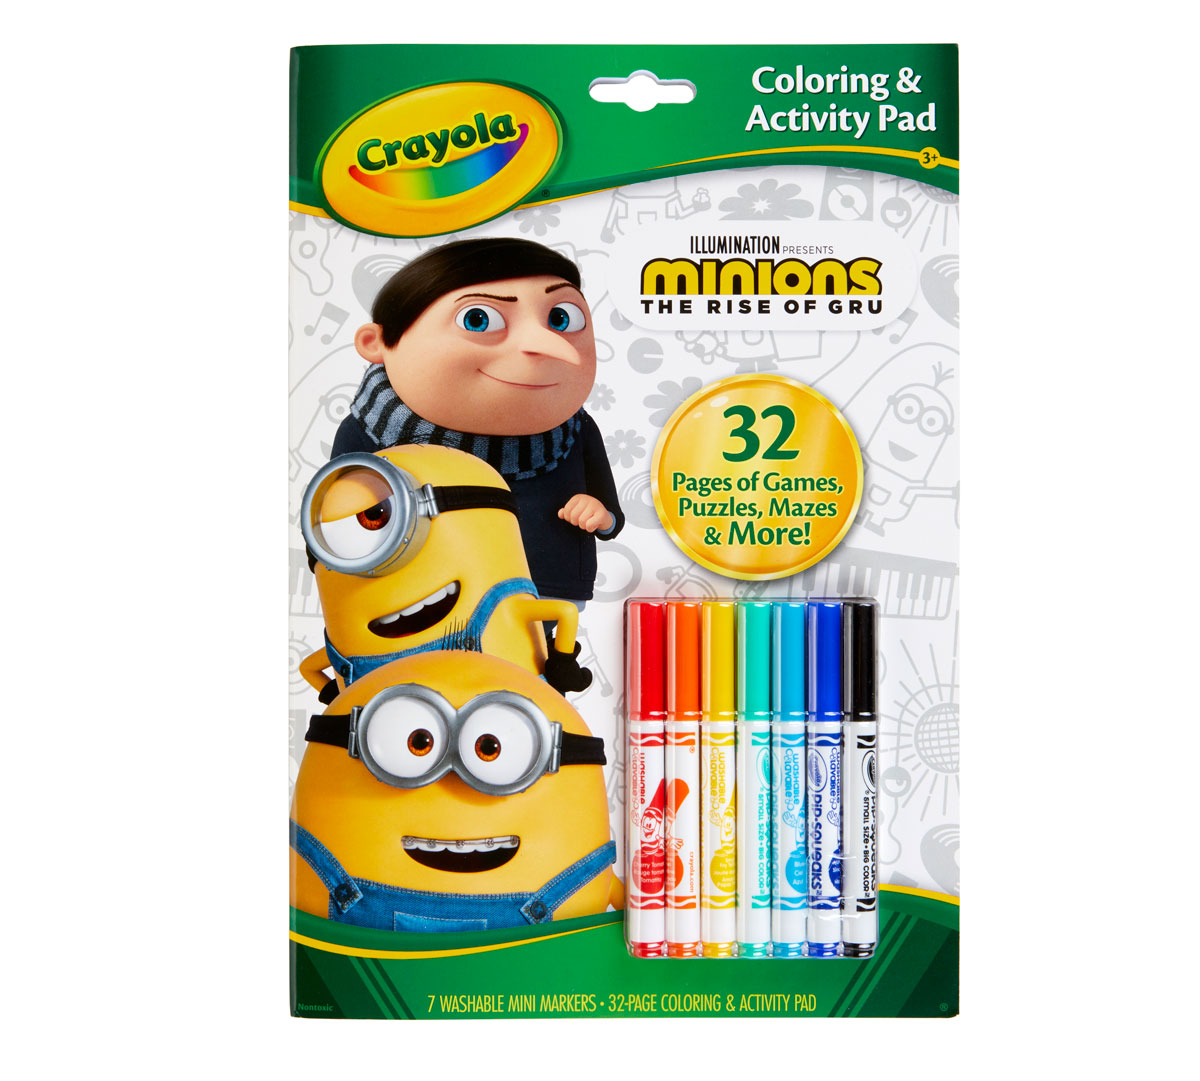 Minions 20 Coloring Pages & Activity Set   Crayola.com   Crayola